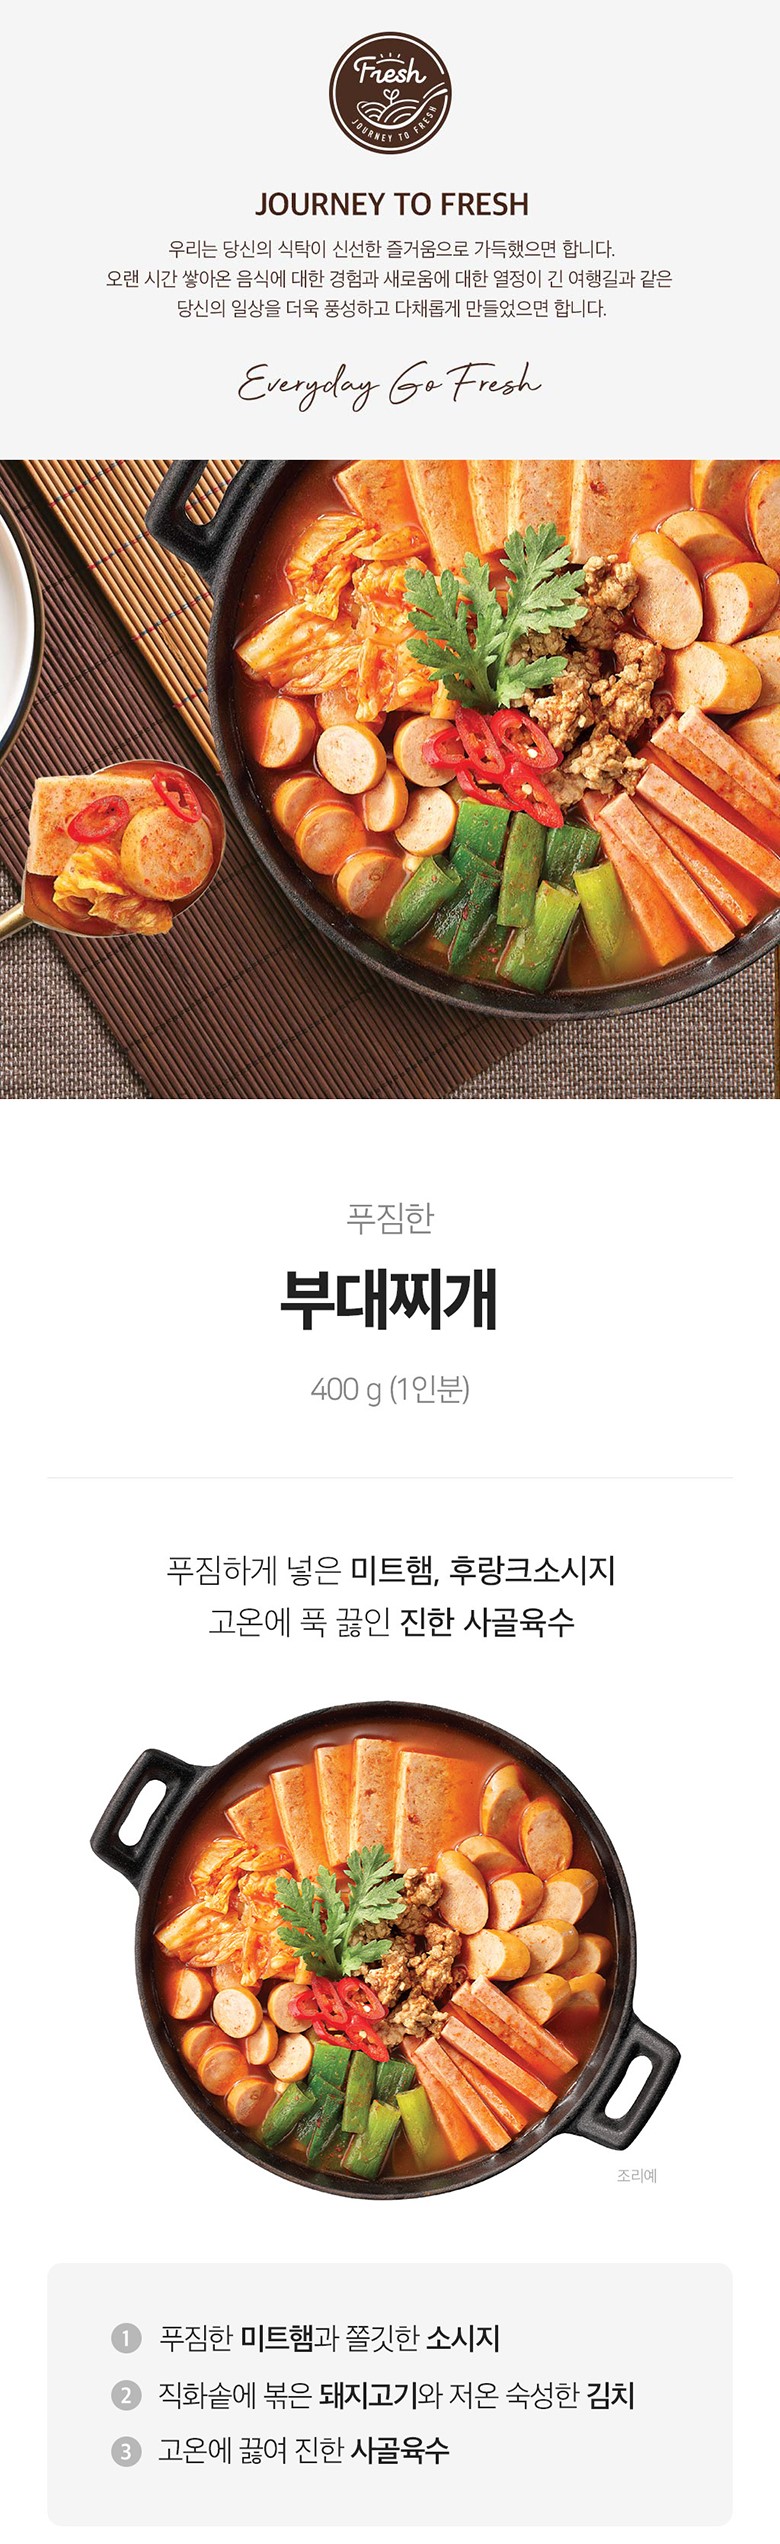 韓國食品-[Ourhome] Spicy Sausage Stew 400g